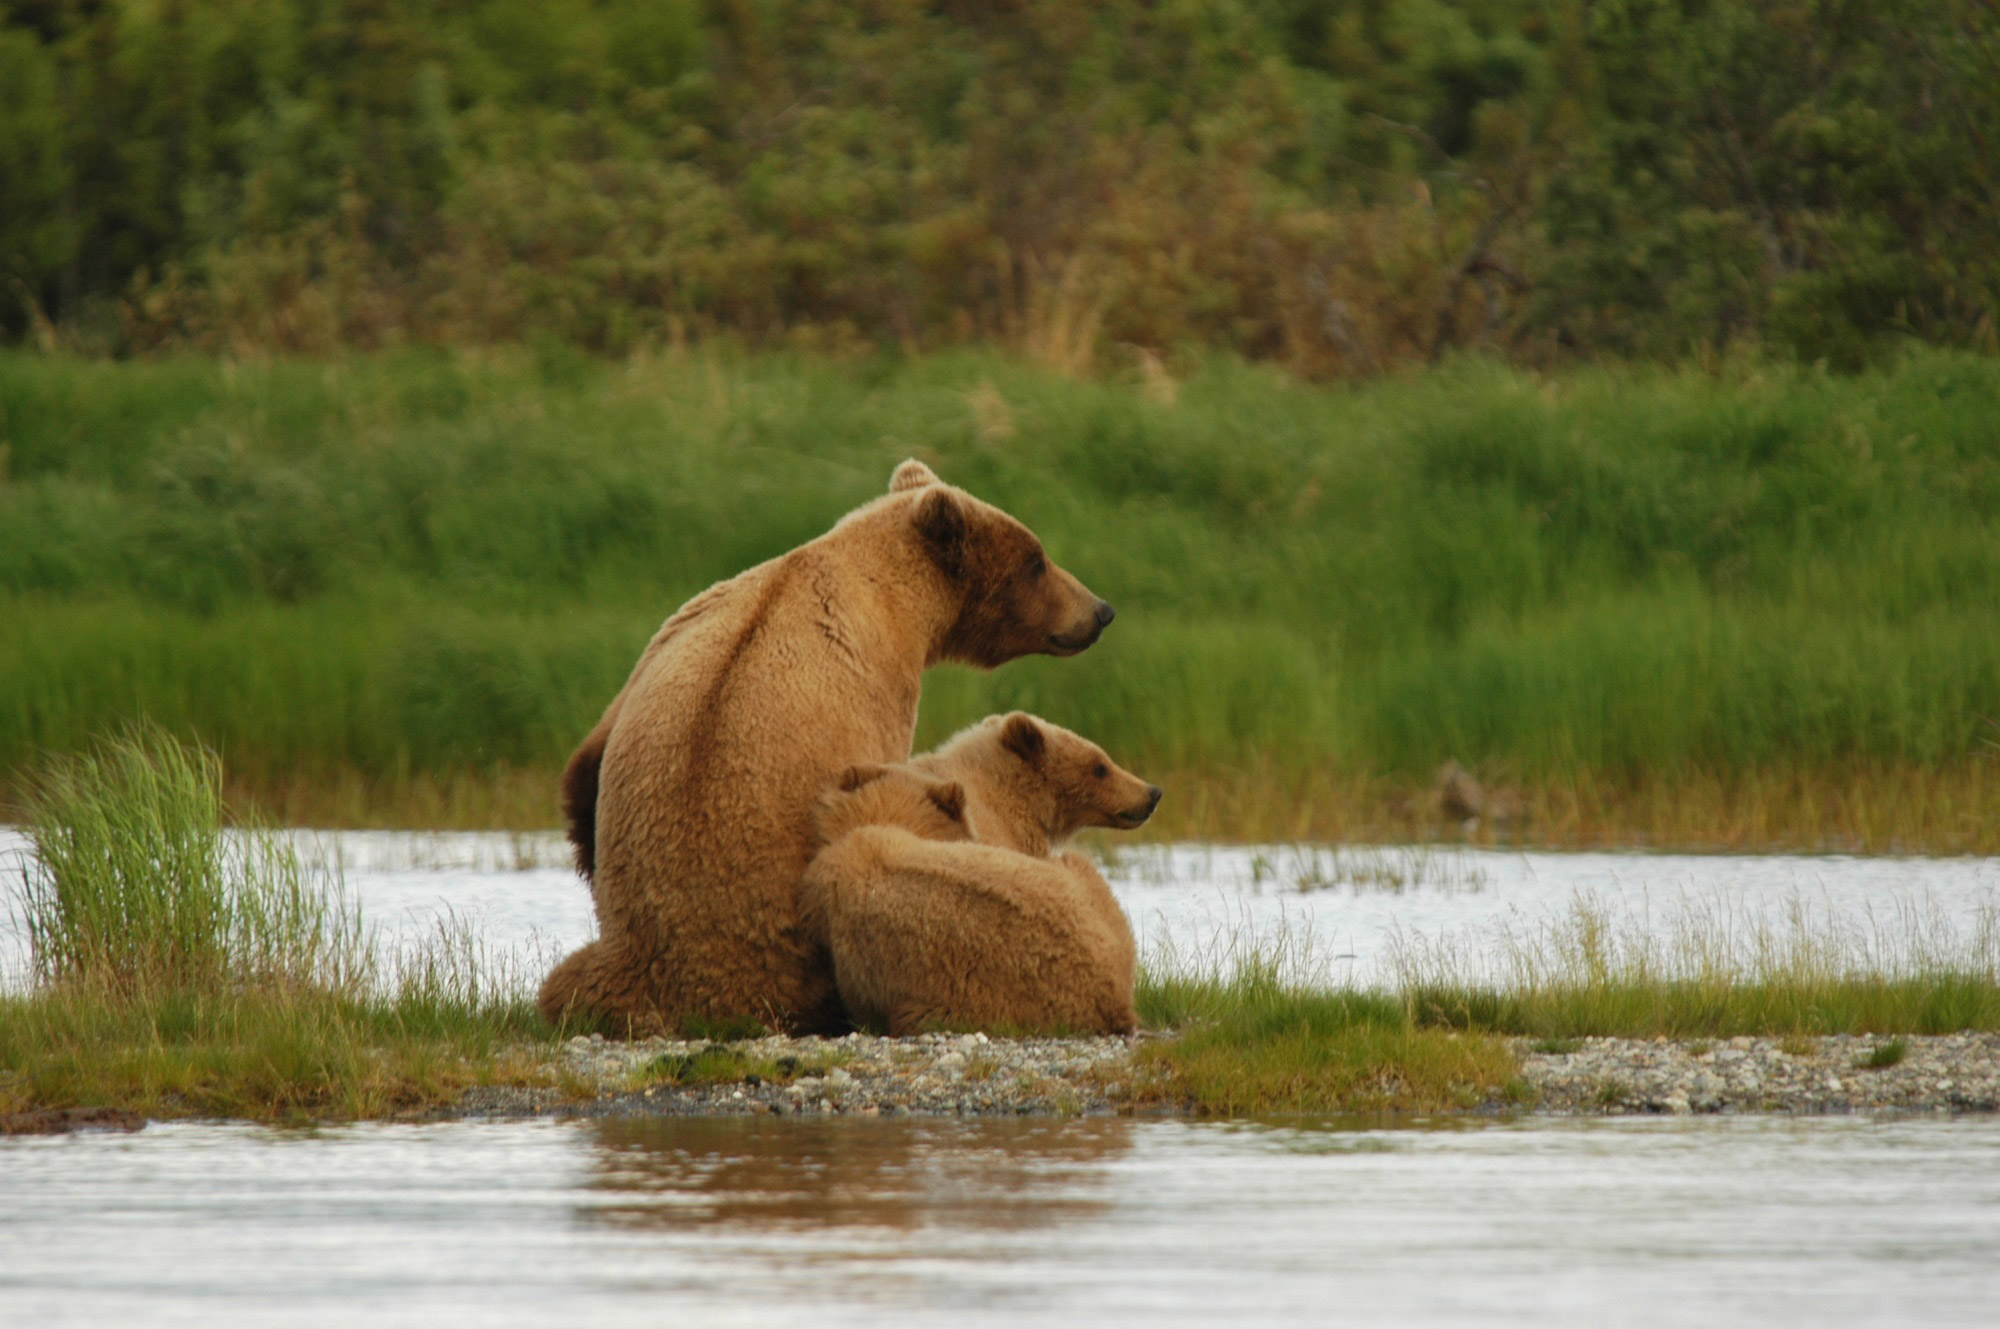 Op mijn wishlist: Beren spotten in Alaska